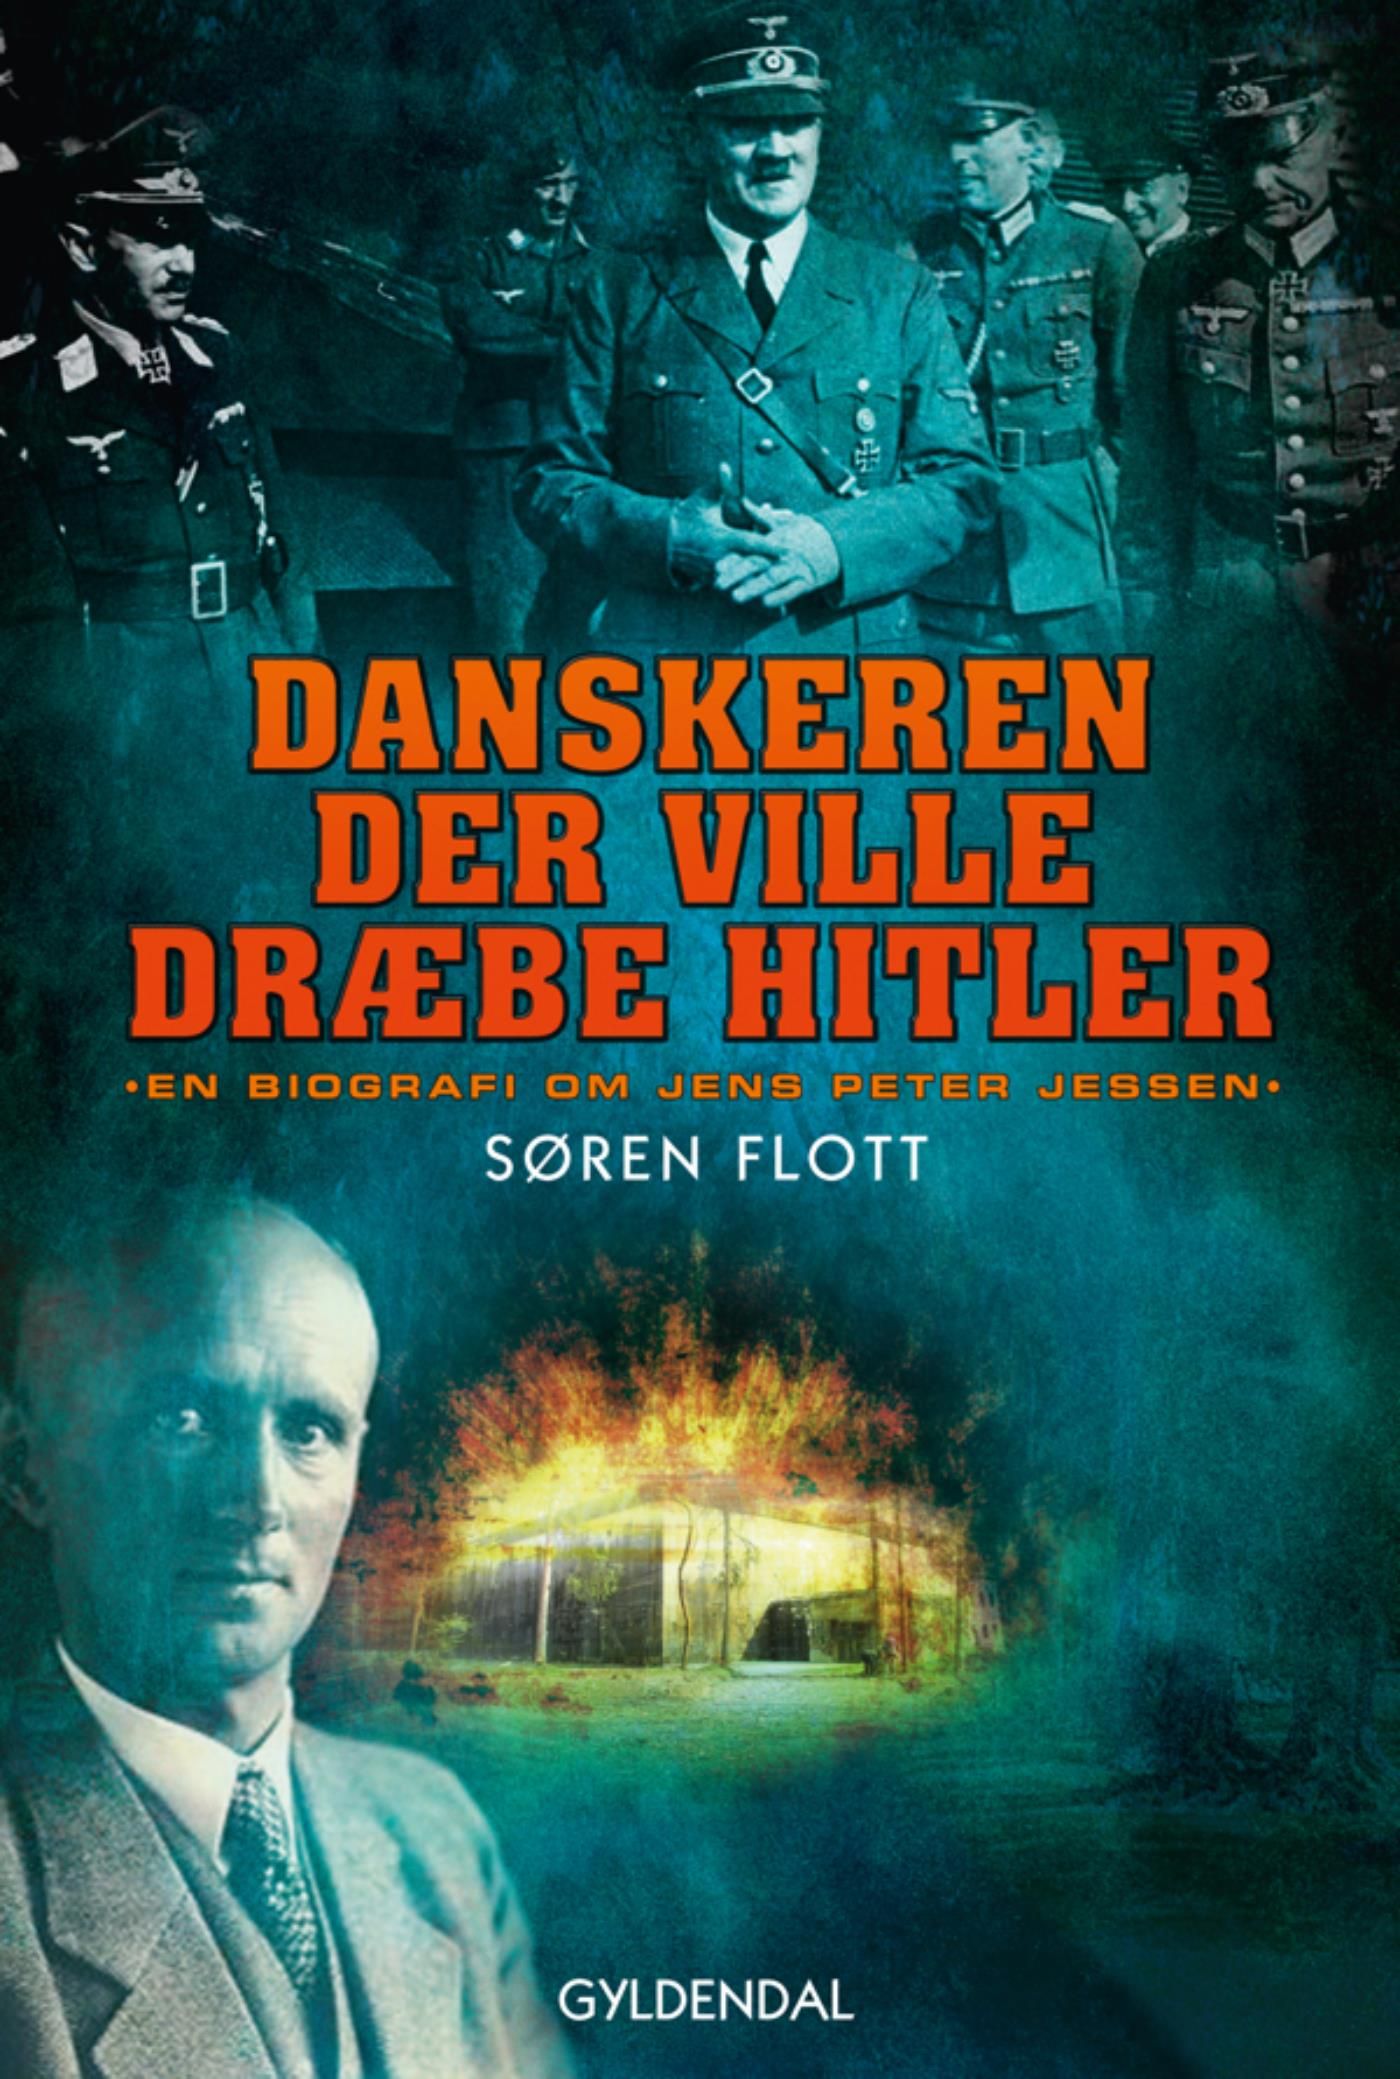 Danskeren der ville dræbe Hitler, eBook by Søren Flott